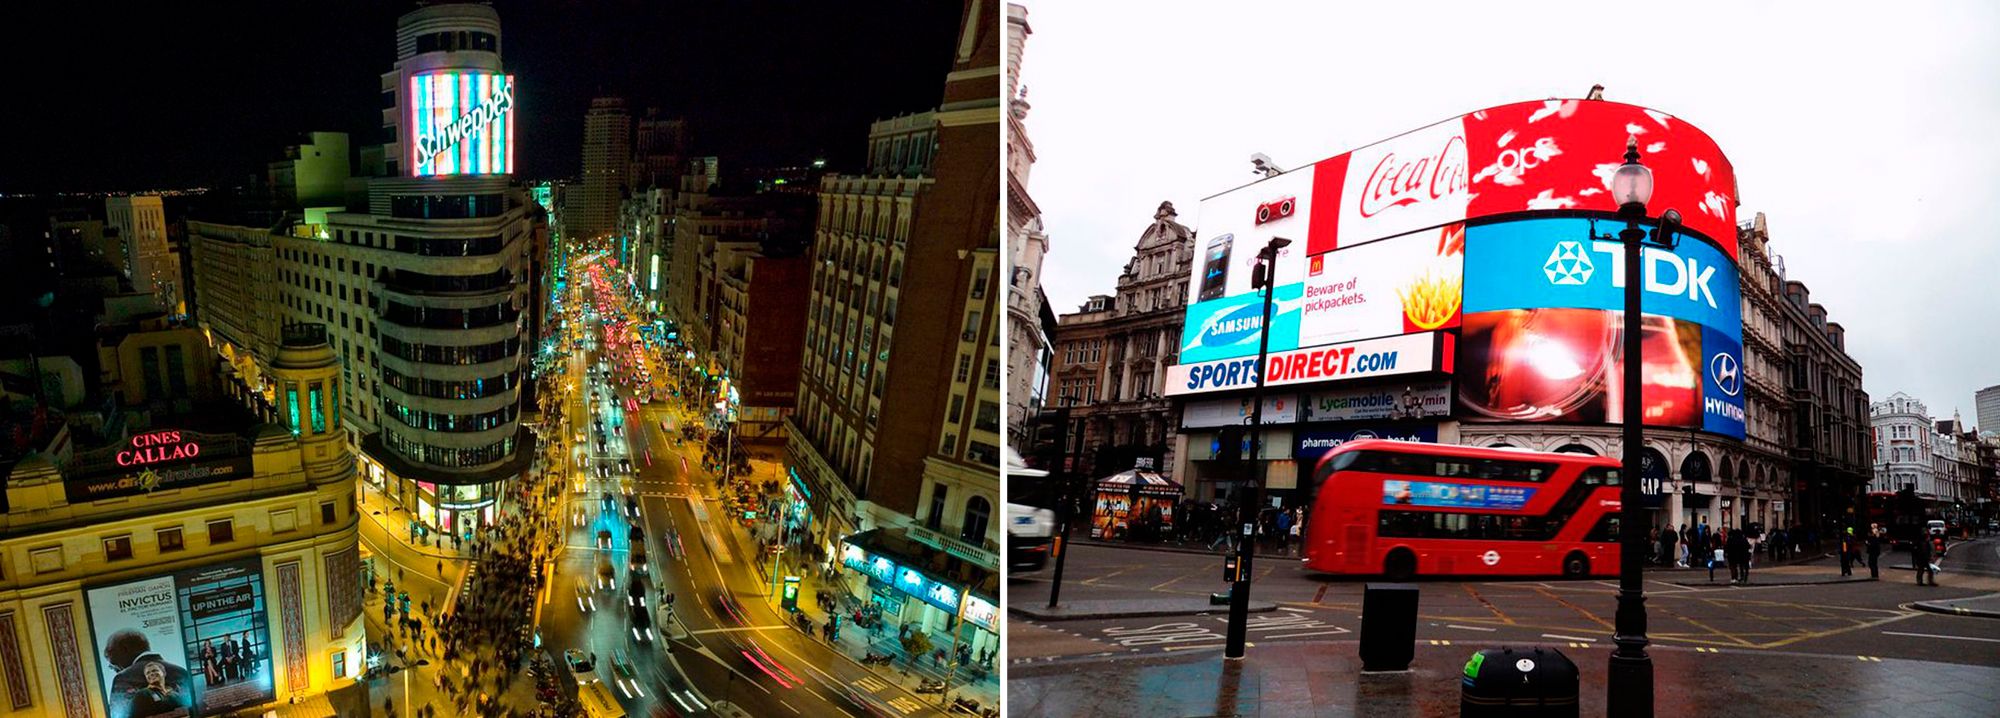 Carteles publicitarios en el centro de Madrid y Londres